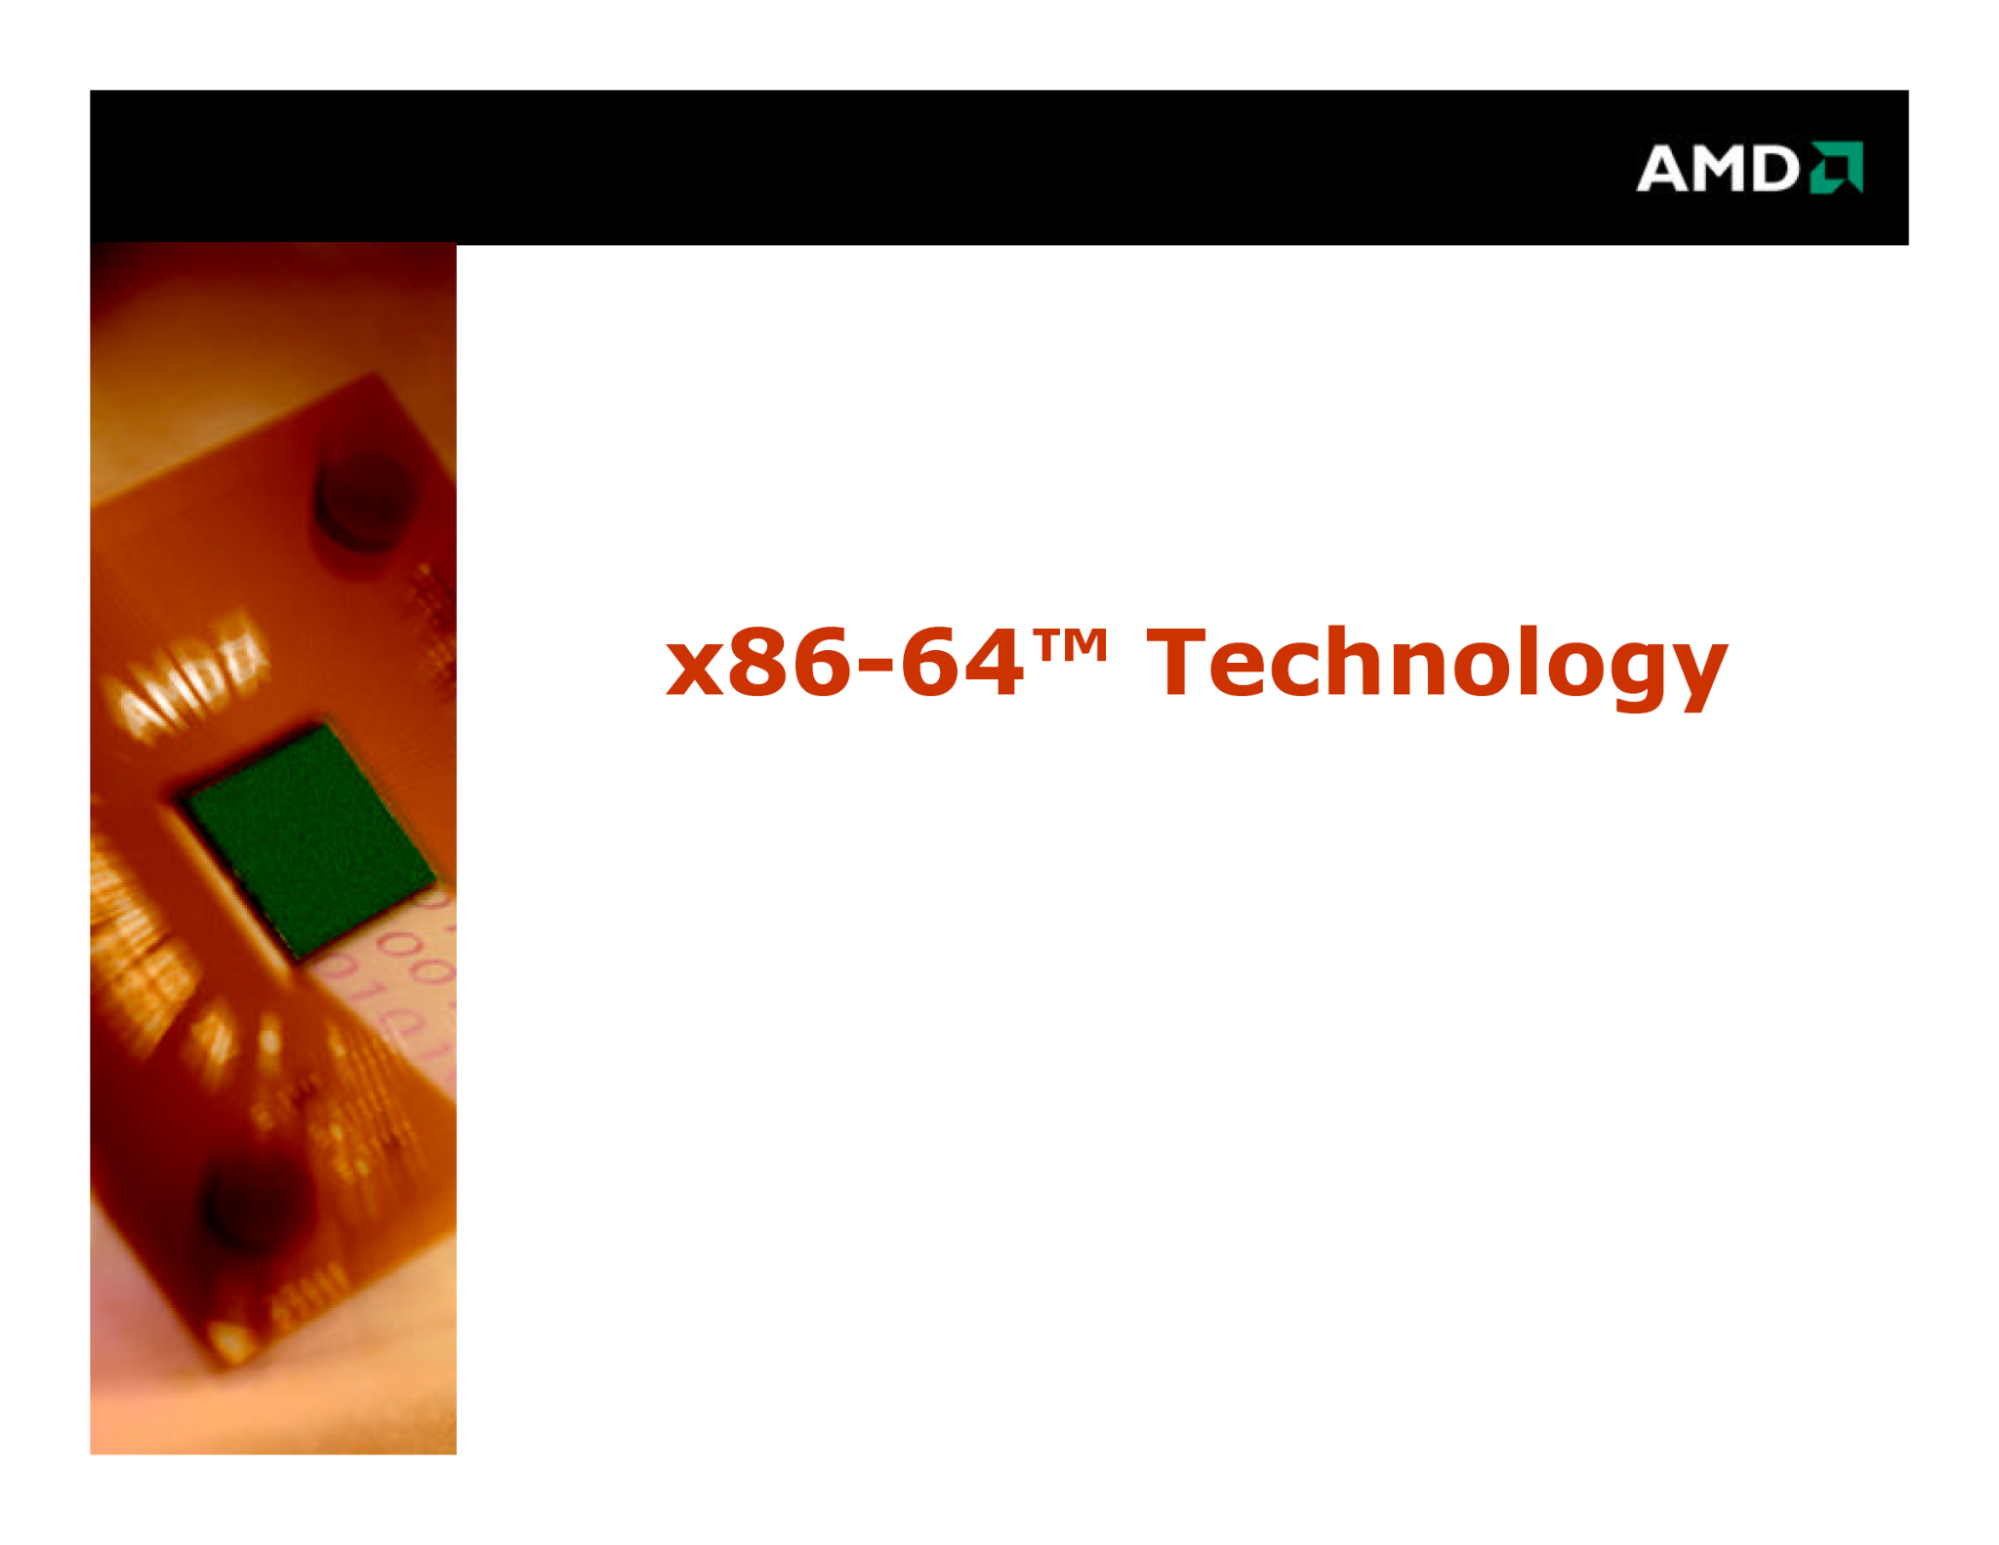 照片中提到了AMDA、x86-64™ Technology、AHDE，跟Advanced Micro Devices公司、新德里管理學院有關，包含了AMD公司、顯示卡、中央處理器、速龍